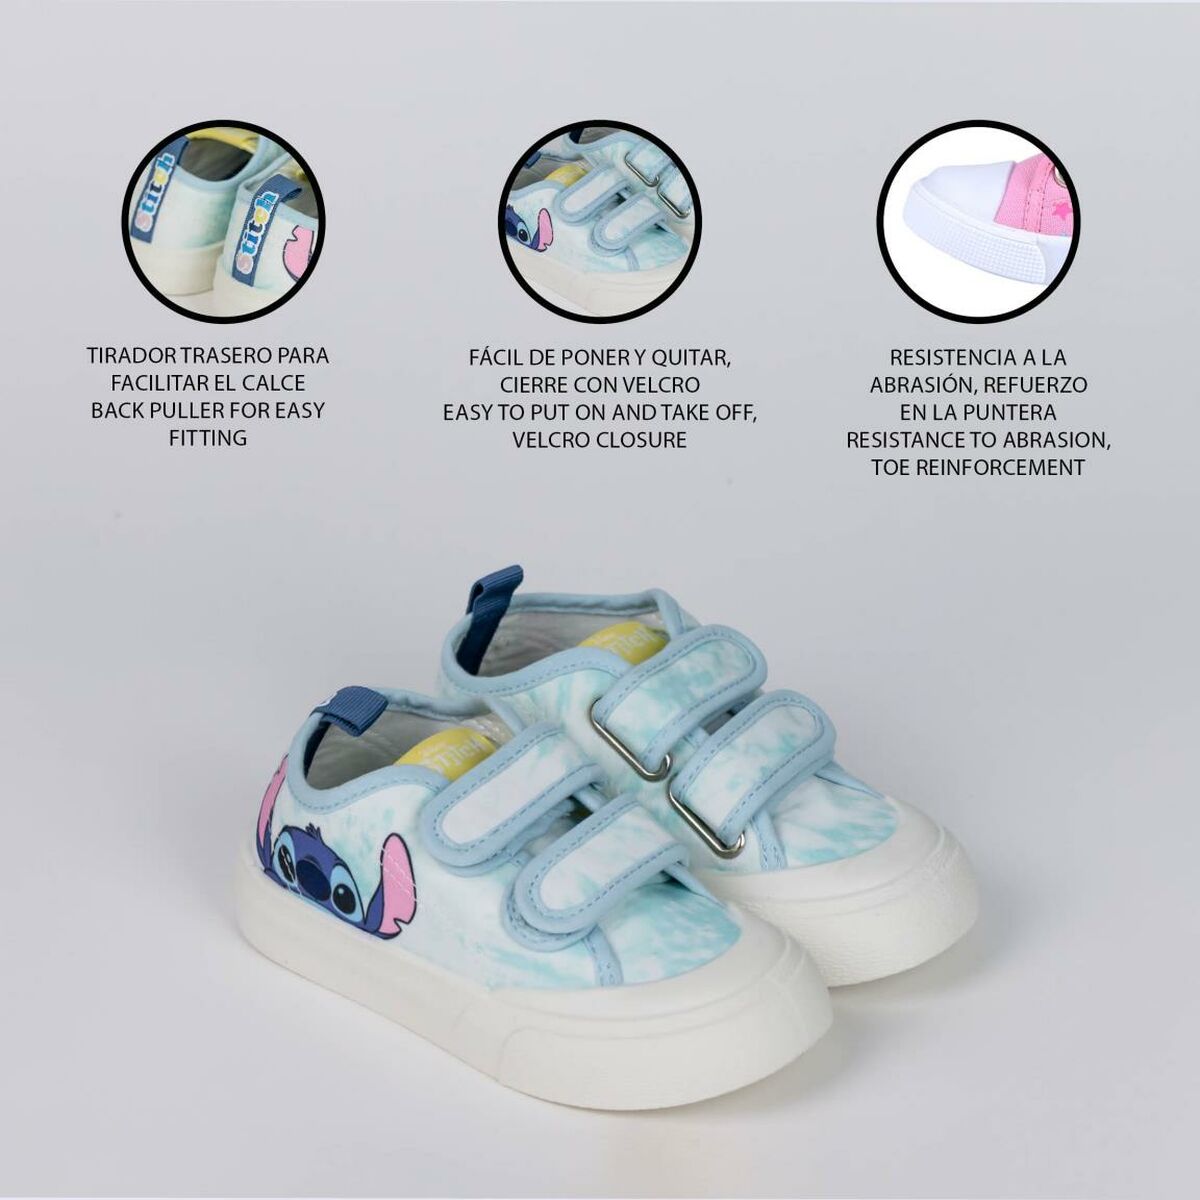 Chaussures de Sport pour Enfants Stitch Bleu clair